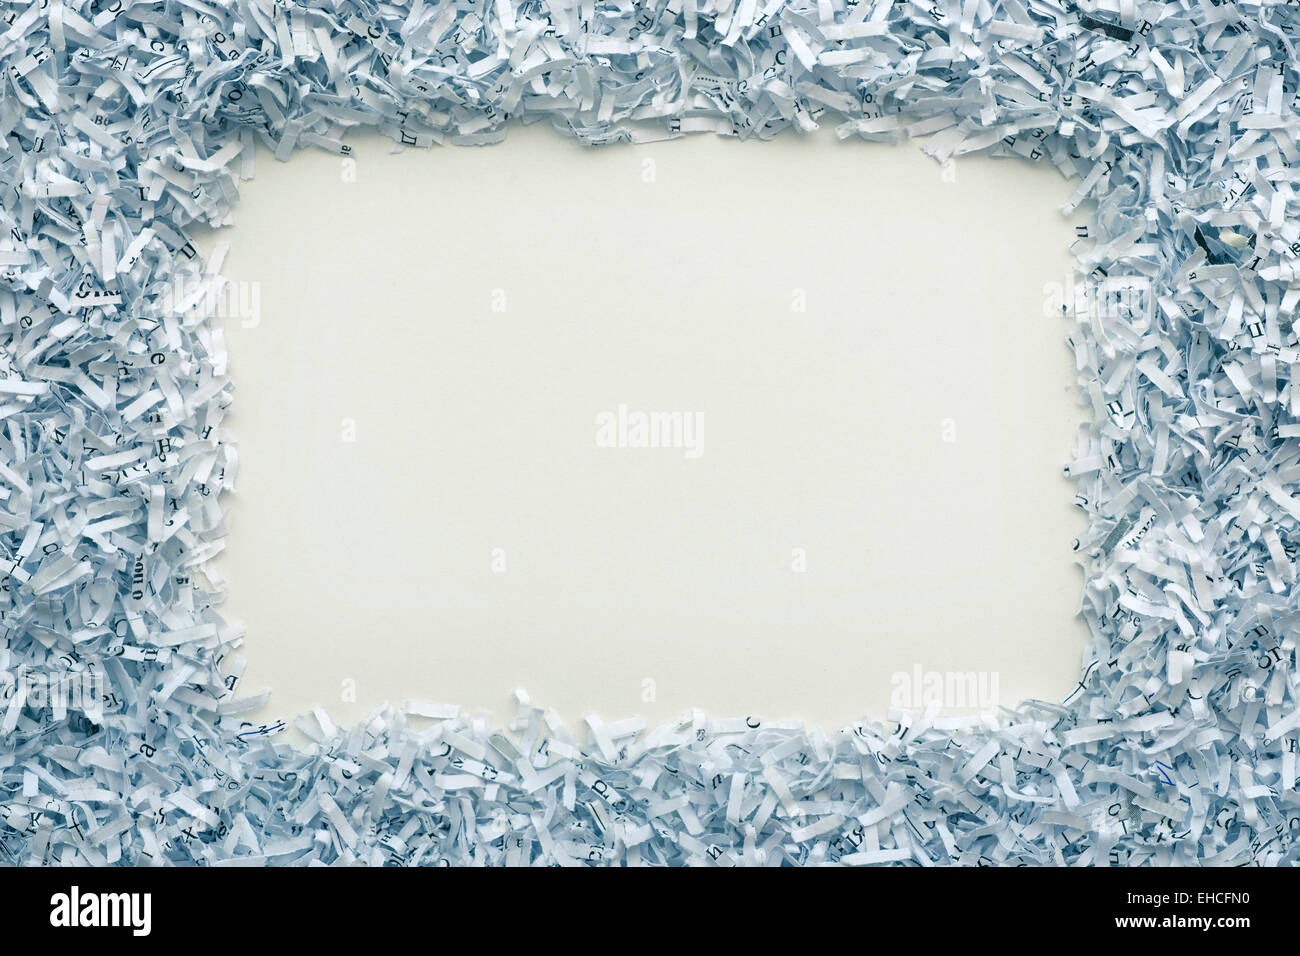 Fond blanc avec cadre autour du papier déchiqueté Photo Stock - Alamy